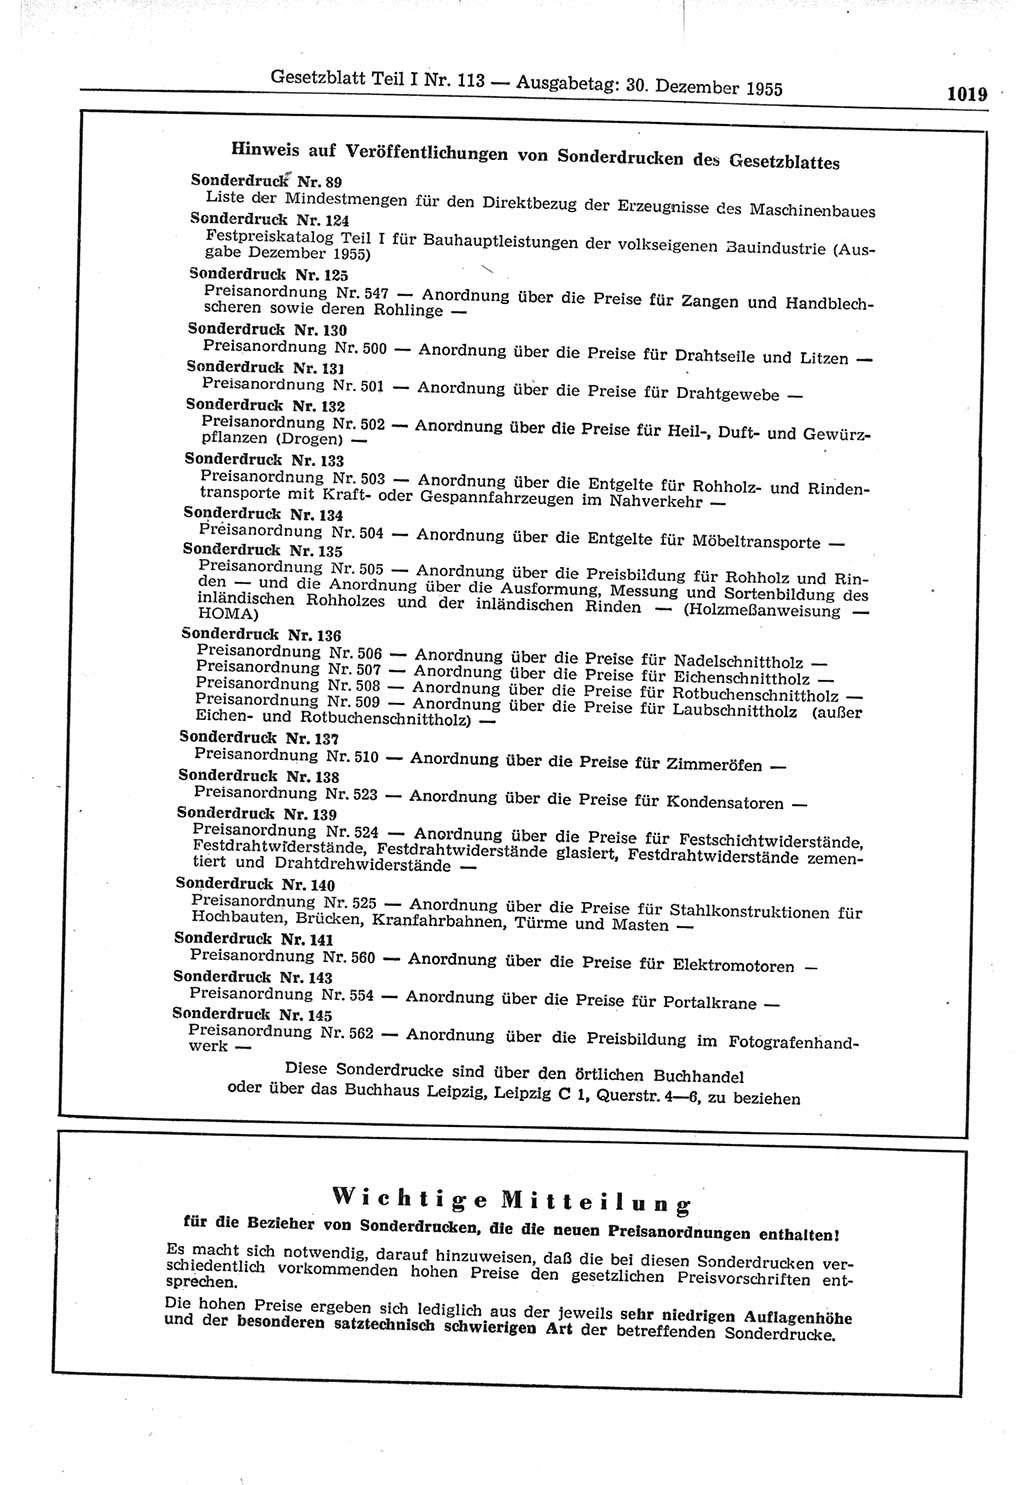 Gesetzblatt (GBl.) der Deutschen Demokratischen Republik (DDR) Teil Ⅰ 1955, Seite 1019 (GBl. DDR Ⅰ 1955, S. 1019)